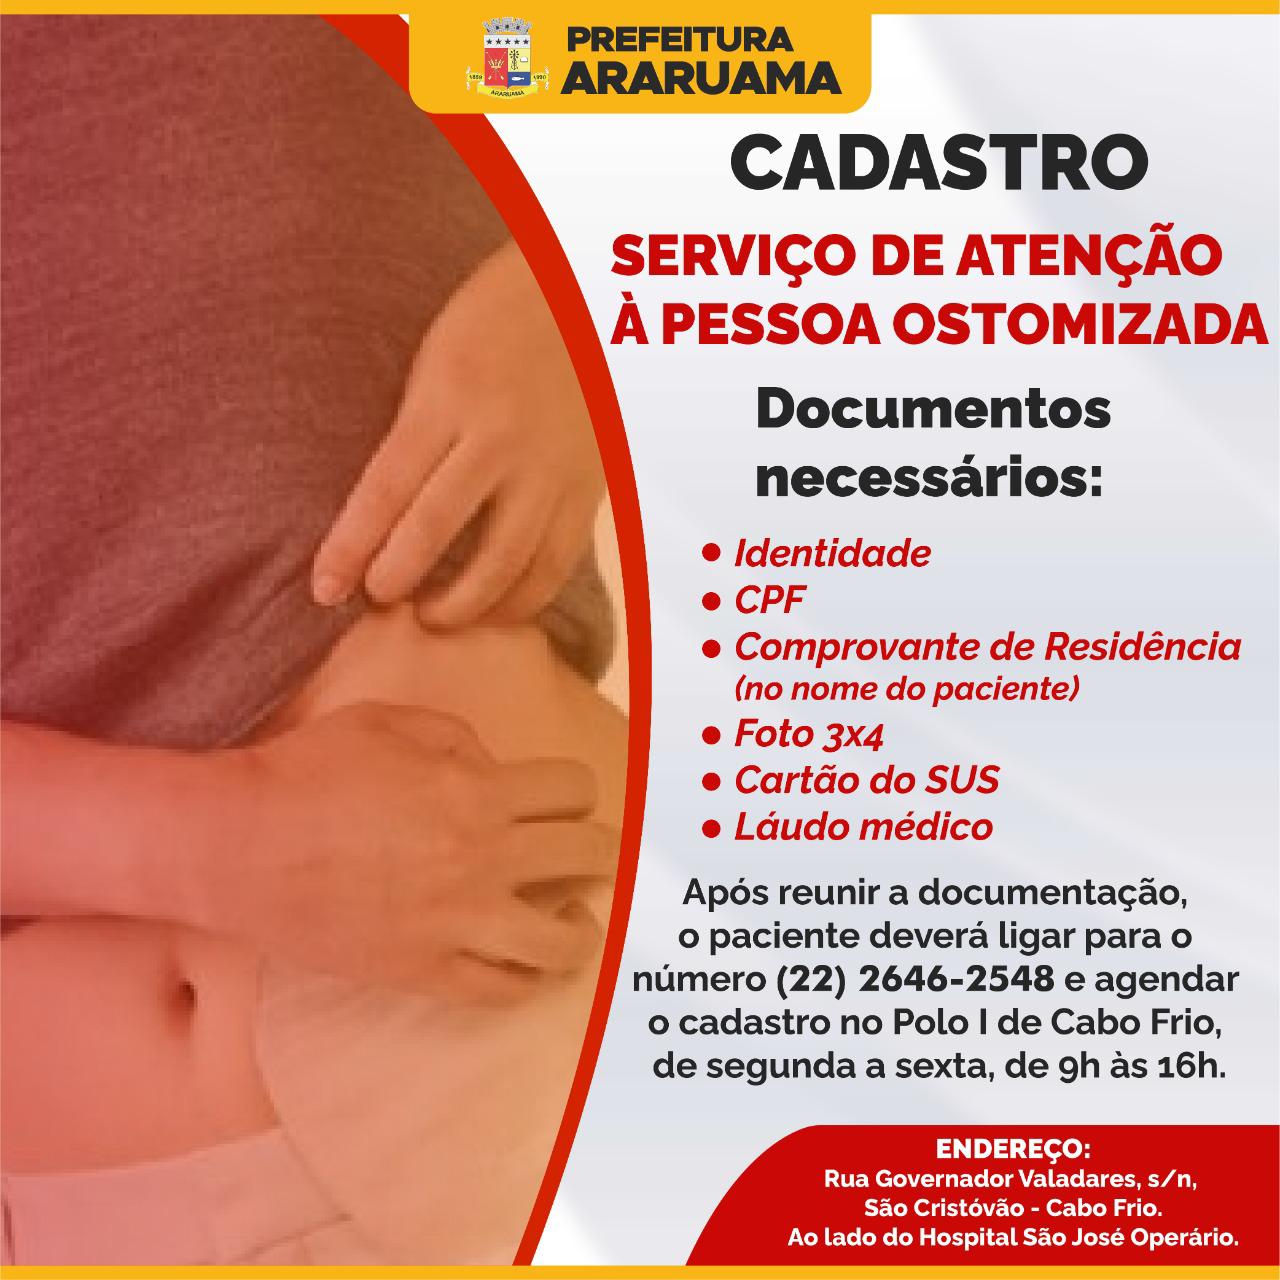 Prefeitura de Araruama informa: Serviço de atenção à pessoa ostomizada é oferecido a todos os pacientes da Rede Pública de Saúde do Estado do Rio